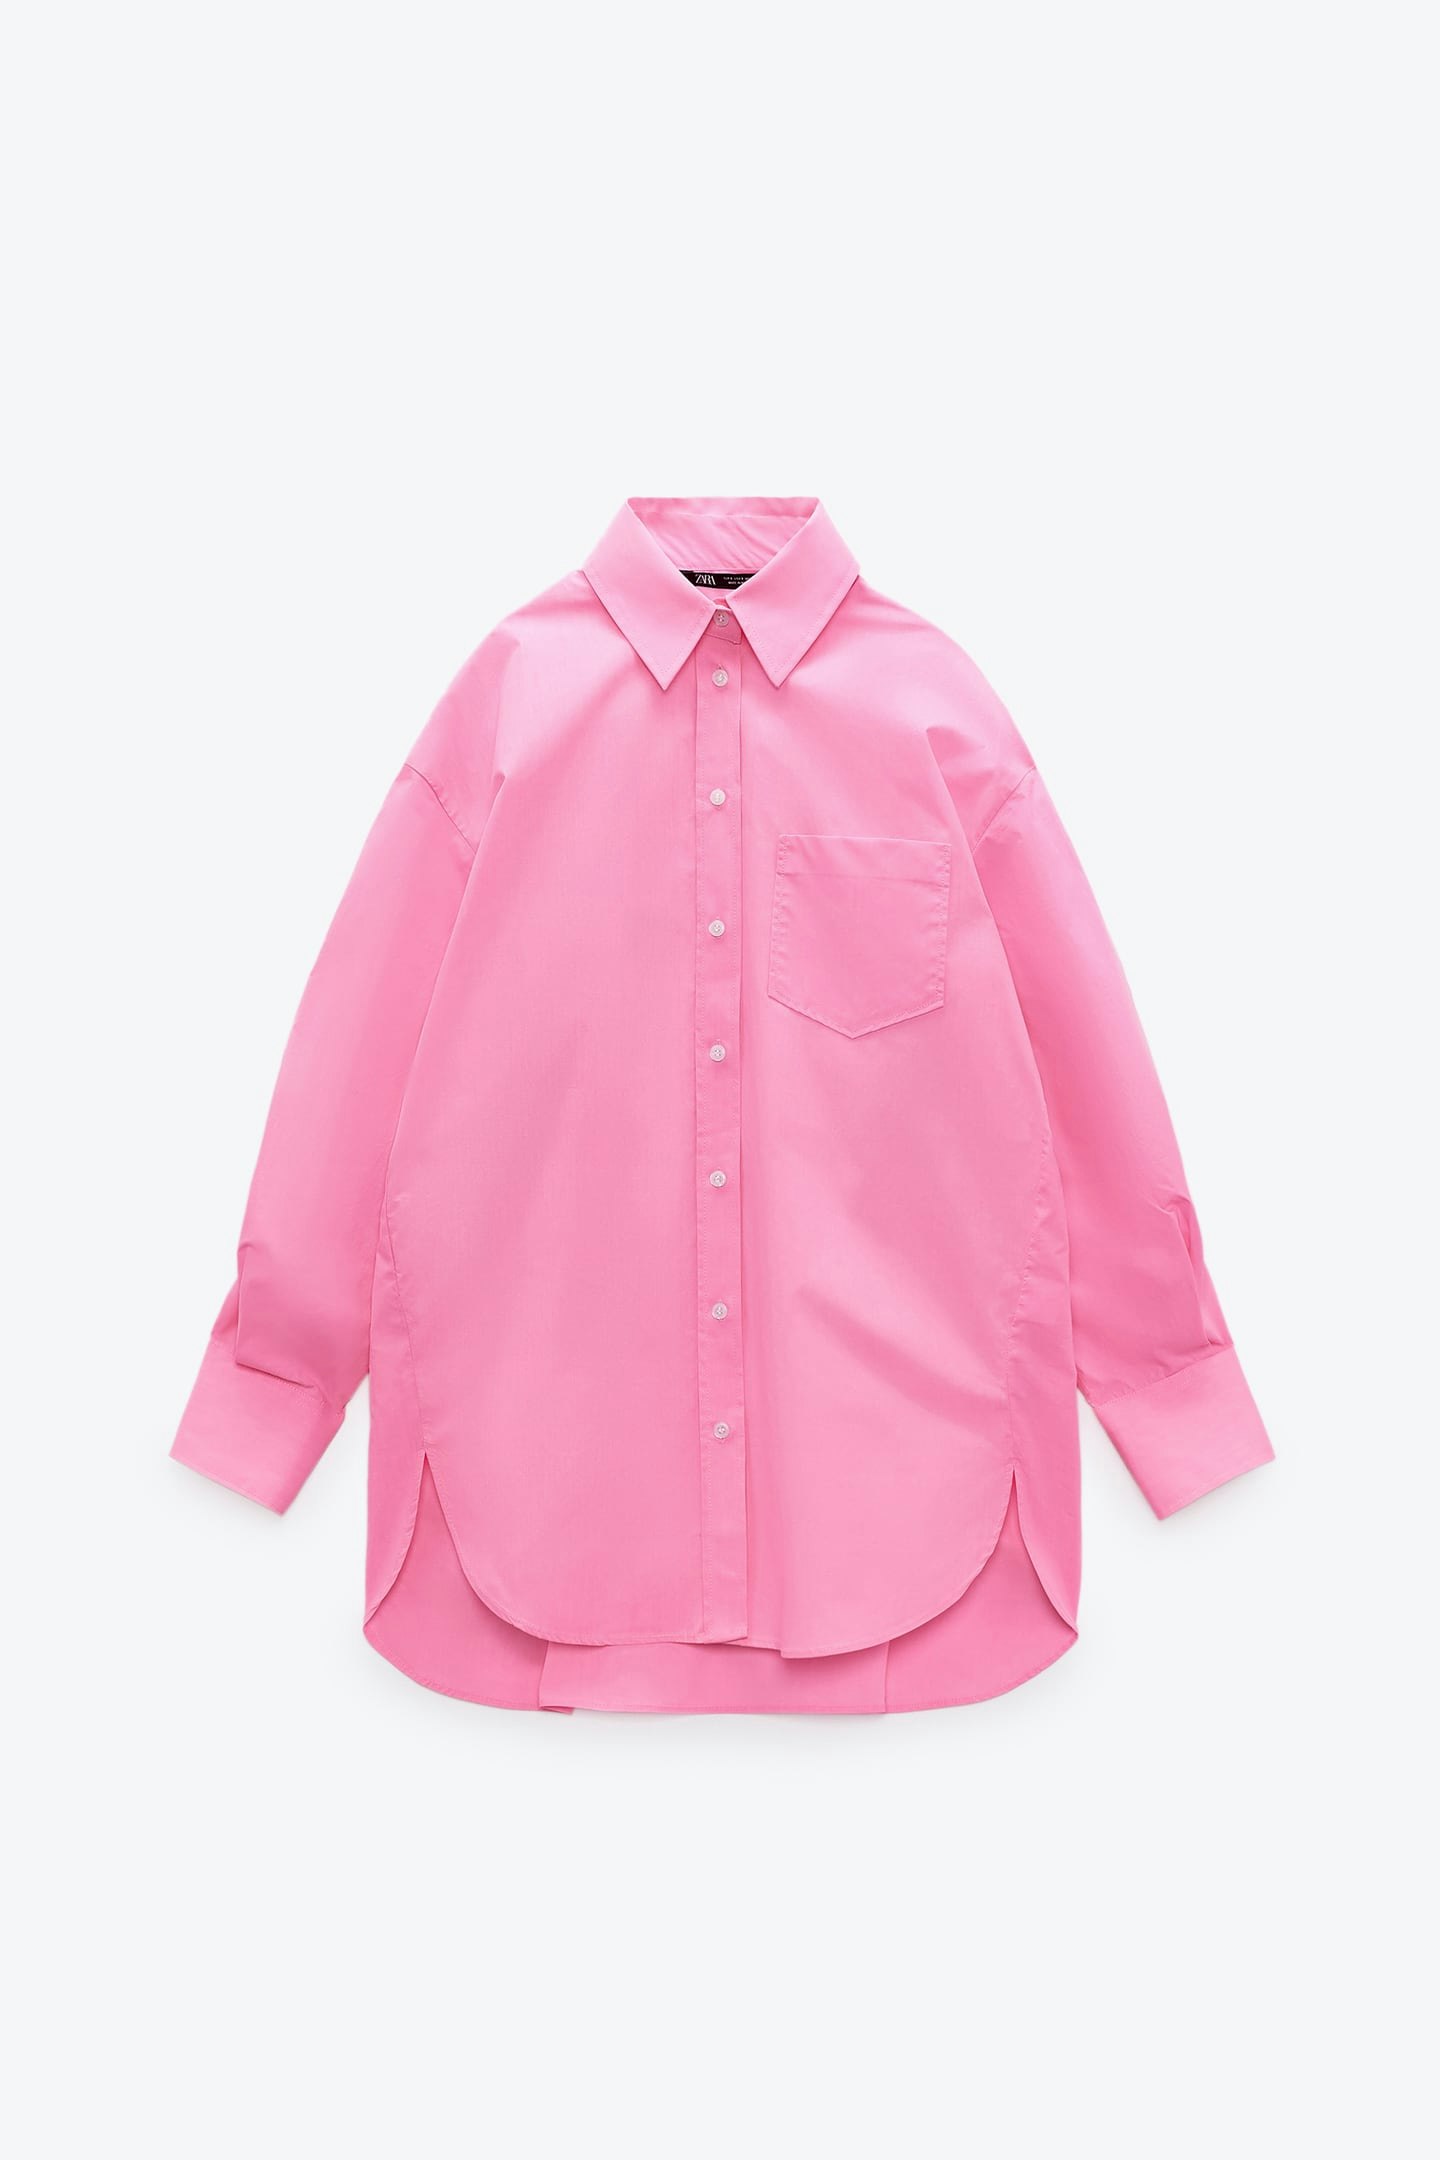 Zara, Pink Poplin Shirt, £27.99